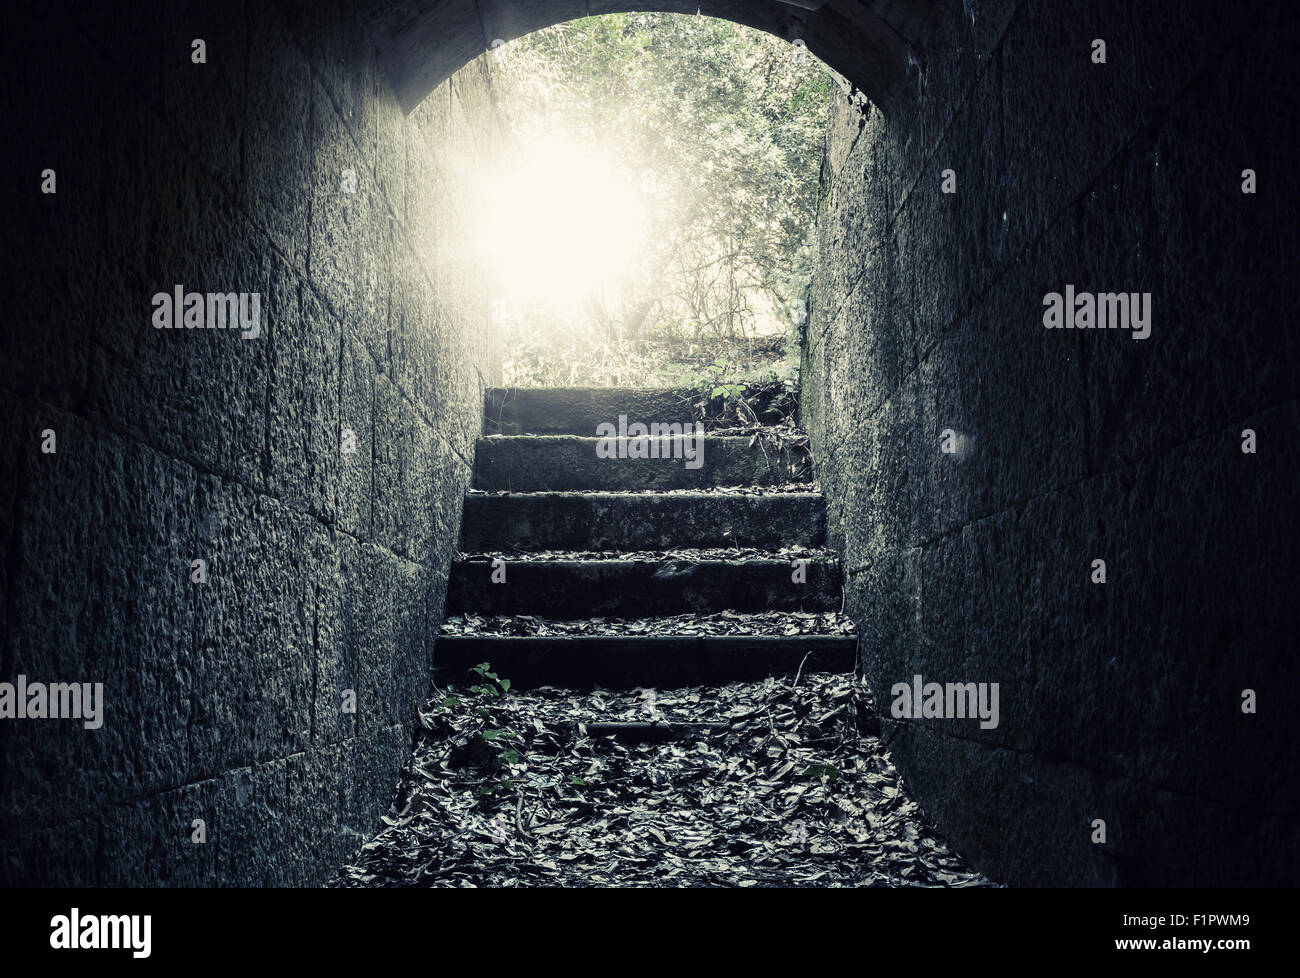 Sortie rayonnante avec des escaliers et des reflets de l'obscur tunnel en béton abandonnées de l'intérieur, filtre de correction tonale Banque D'Images